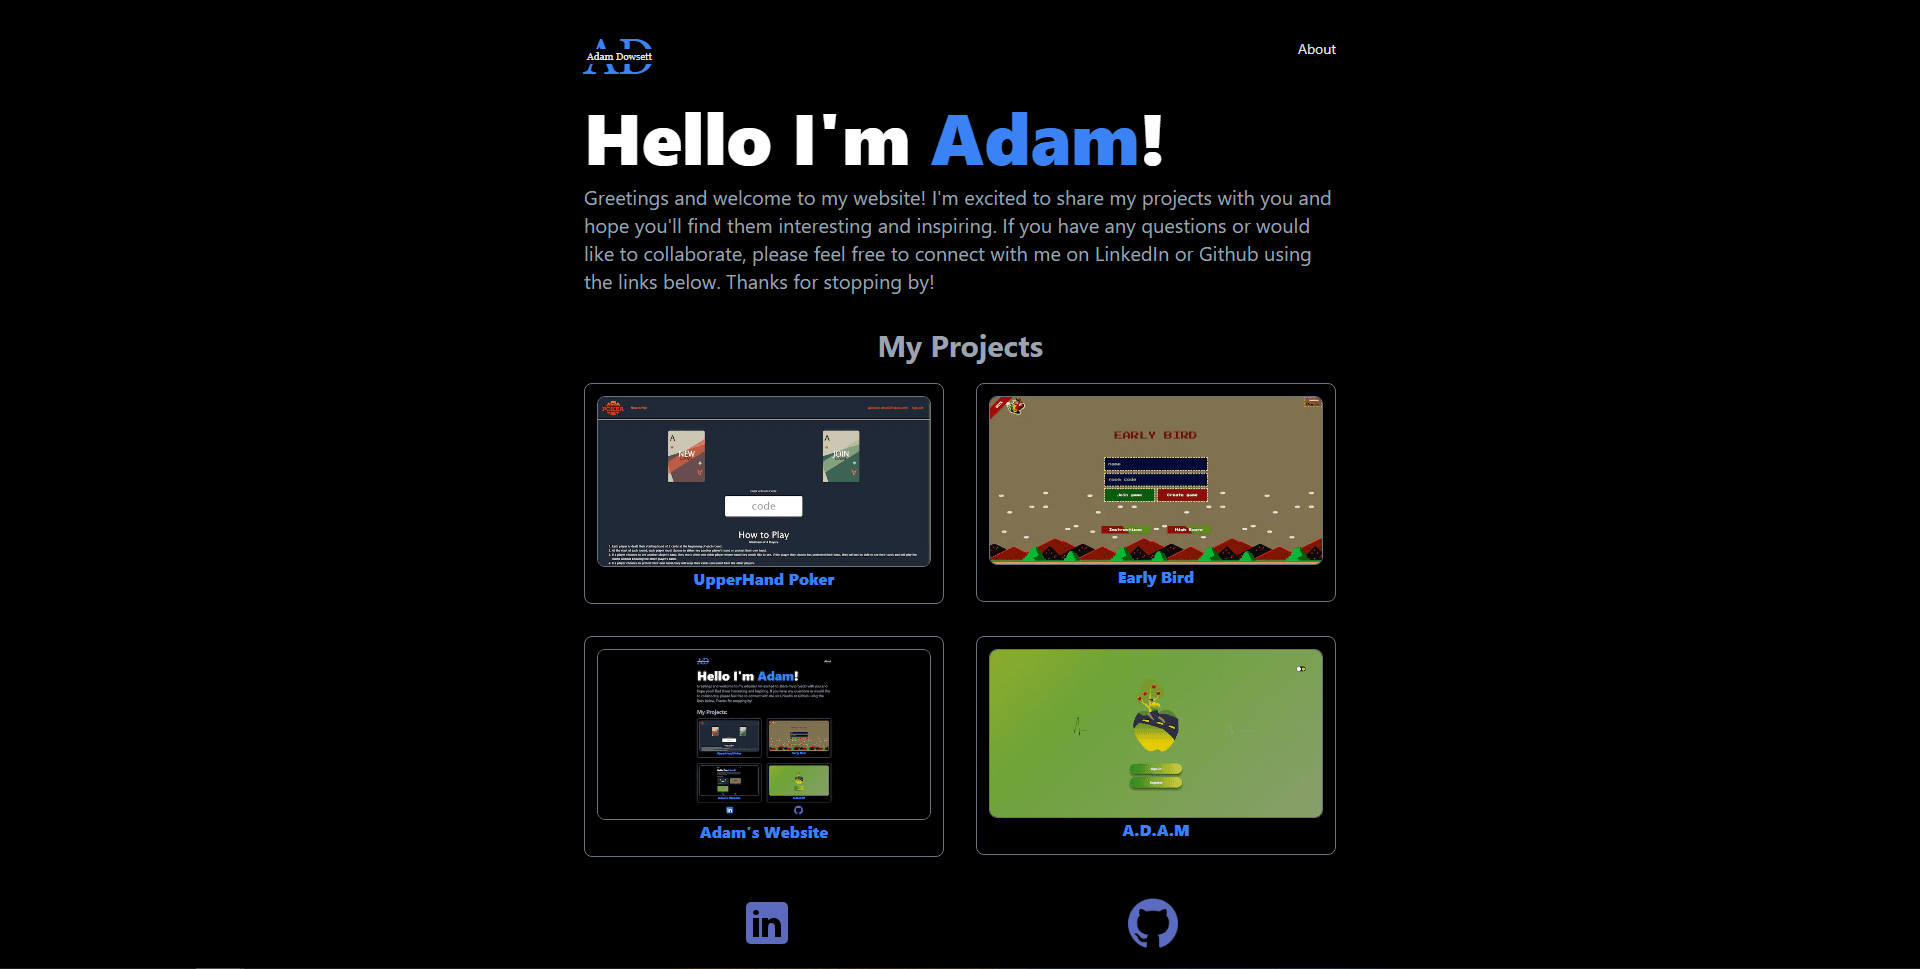 Adam's Website